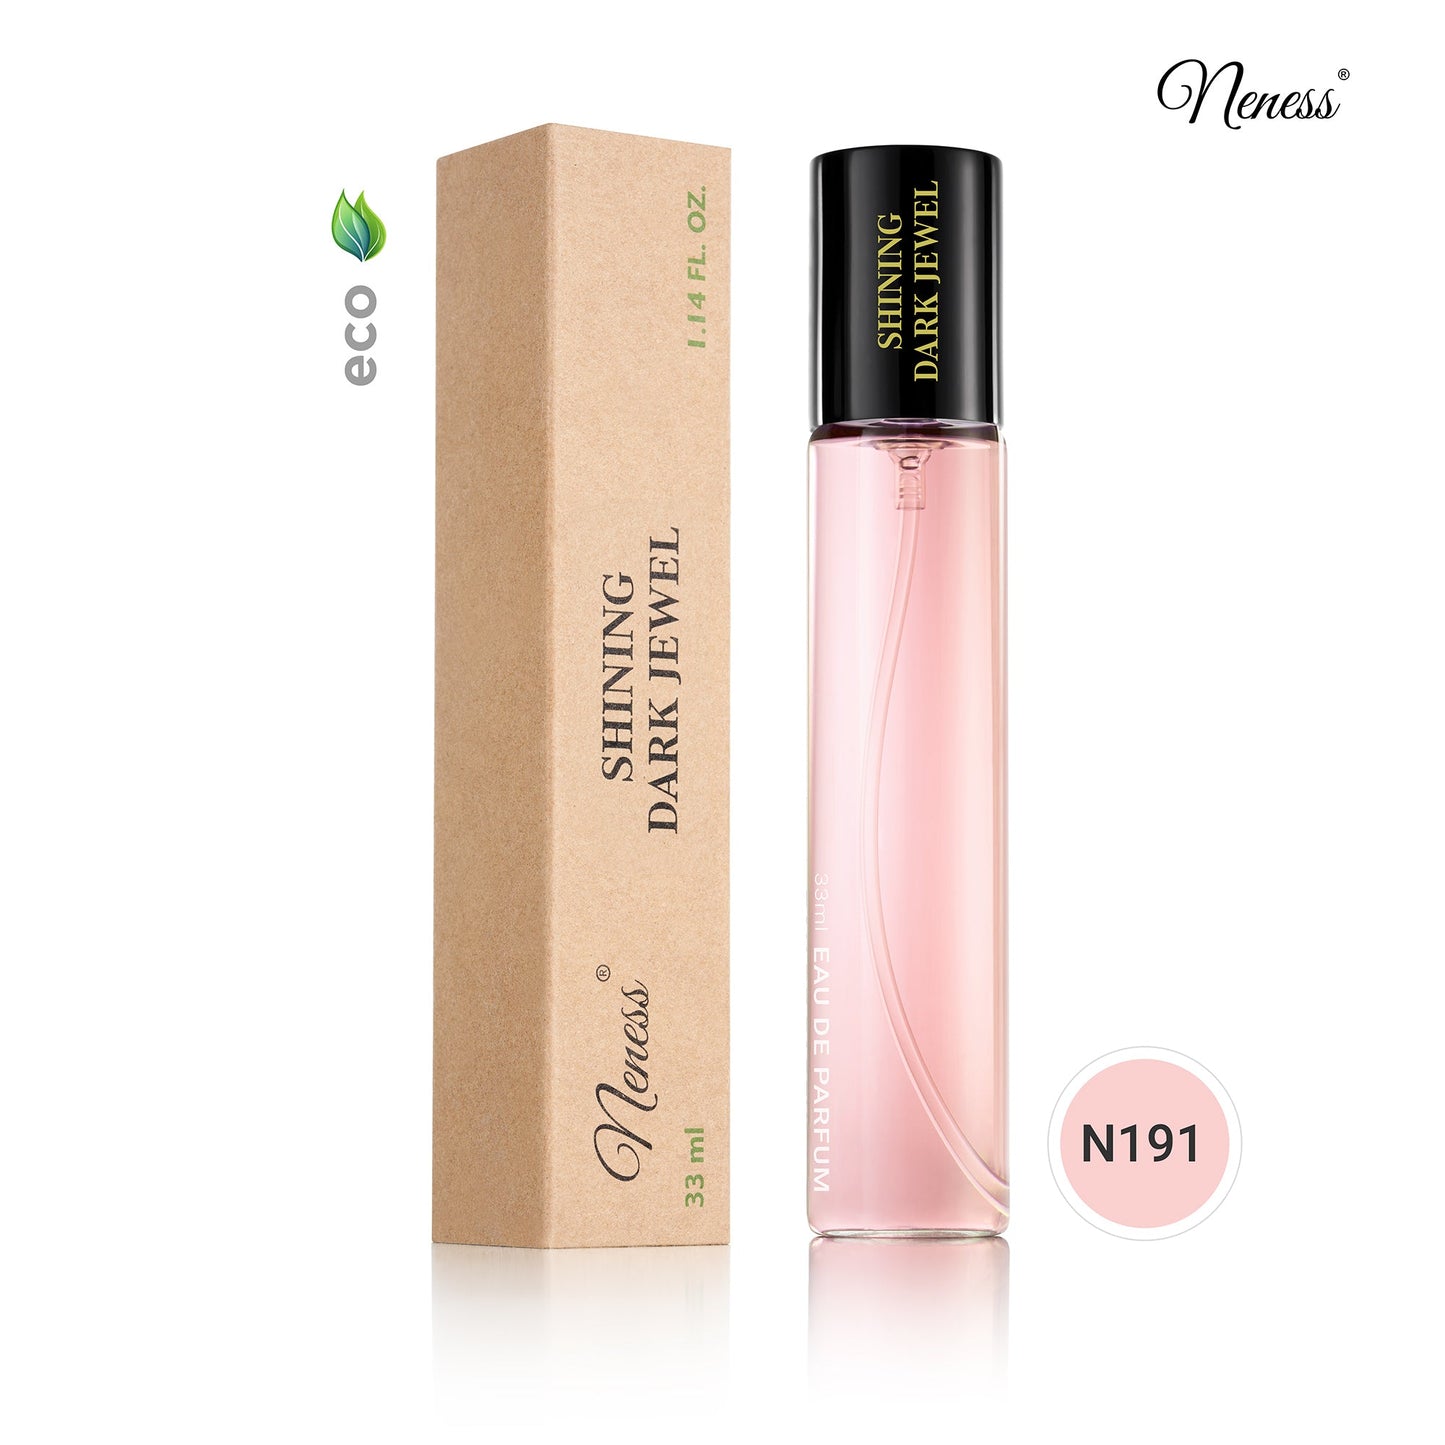 N191. Neness Shining Dark Jewel - 33 ml - Parfum voor vrouwen